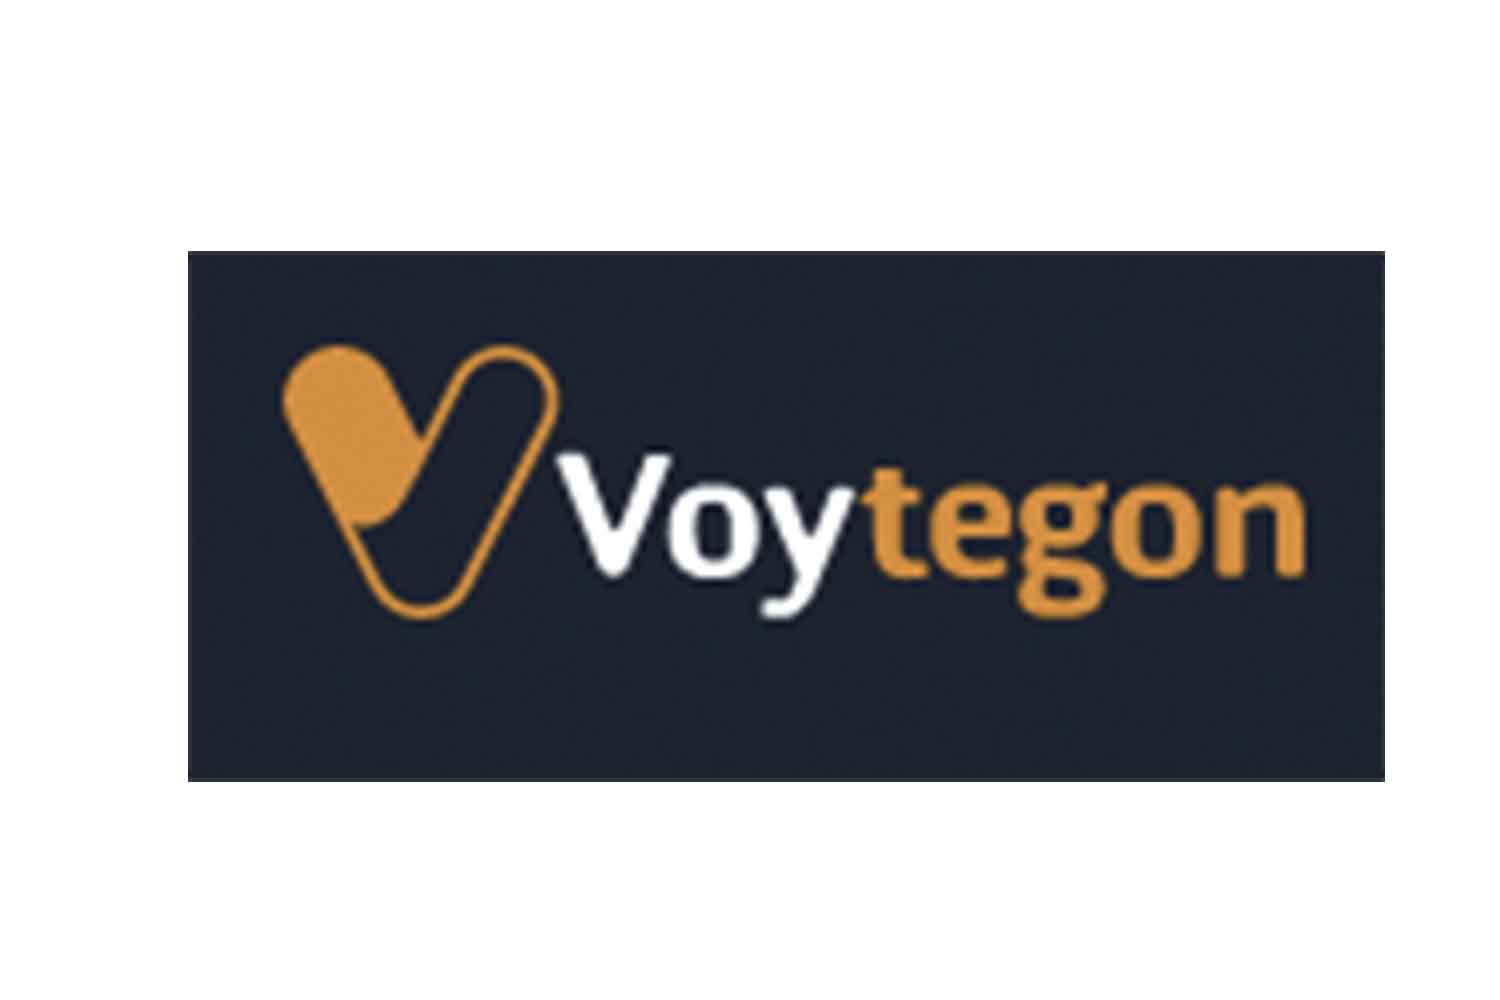 Voytegon scam broker review